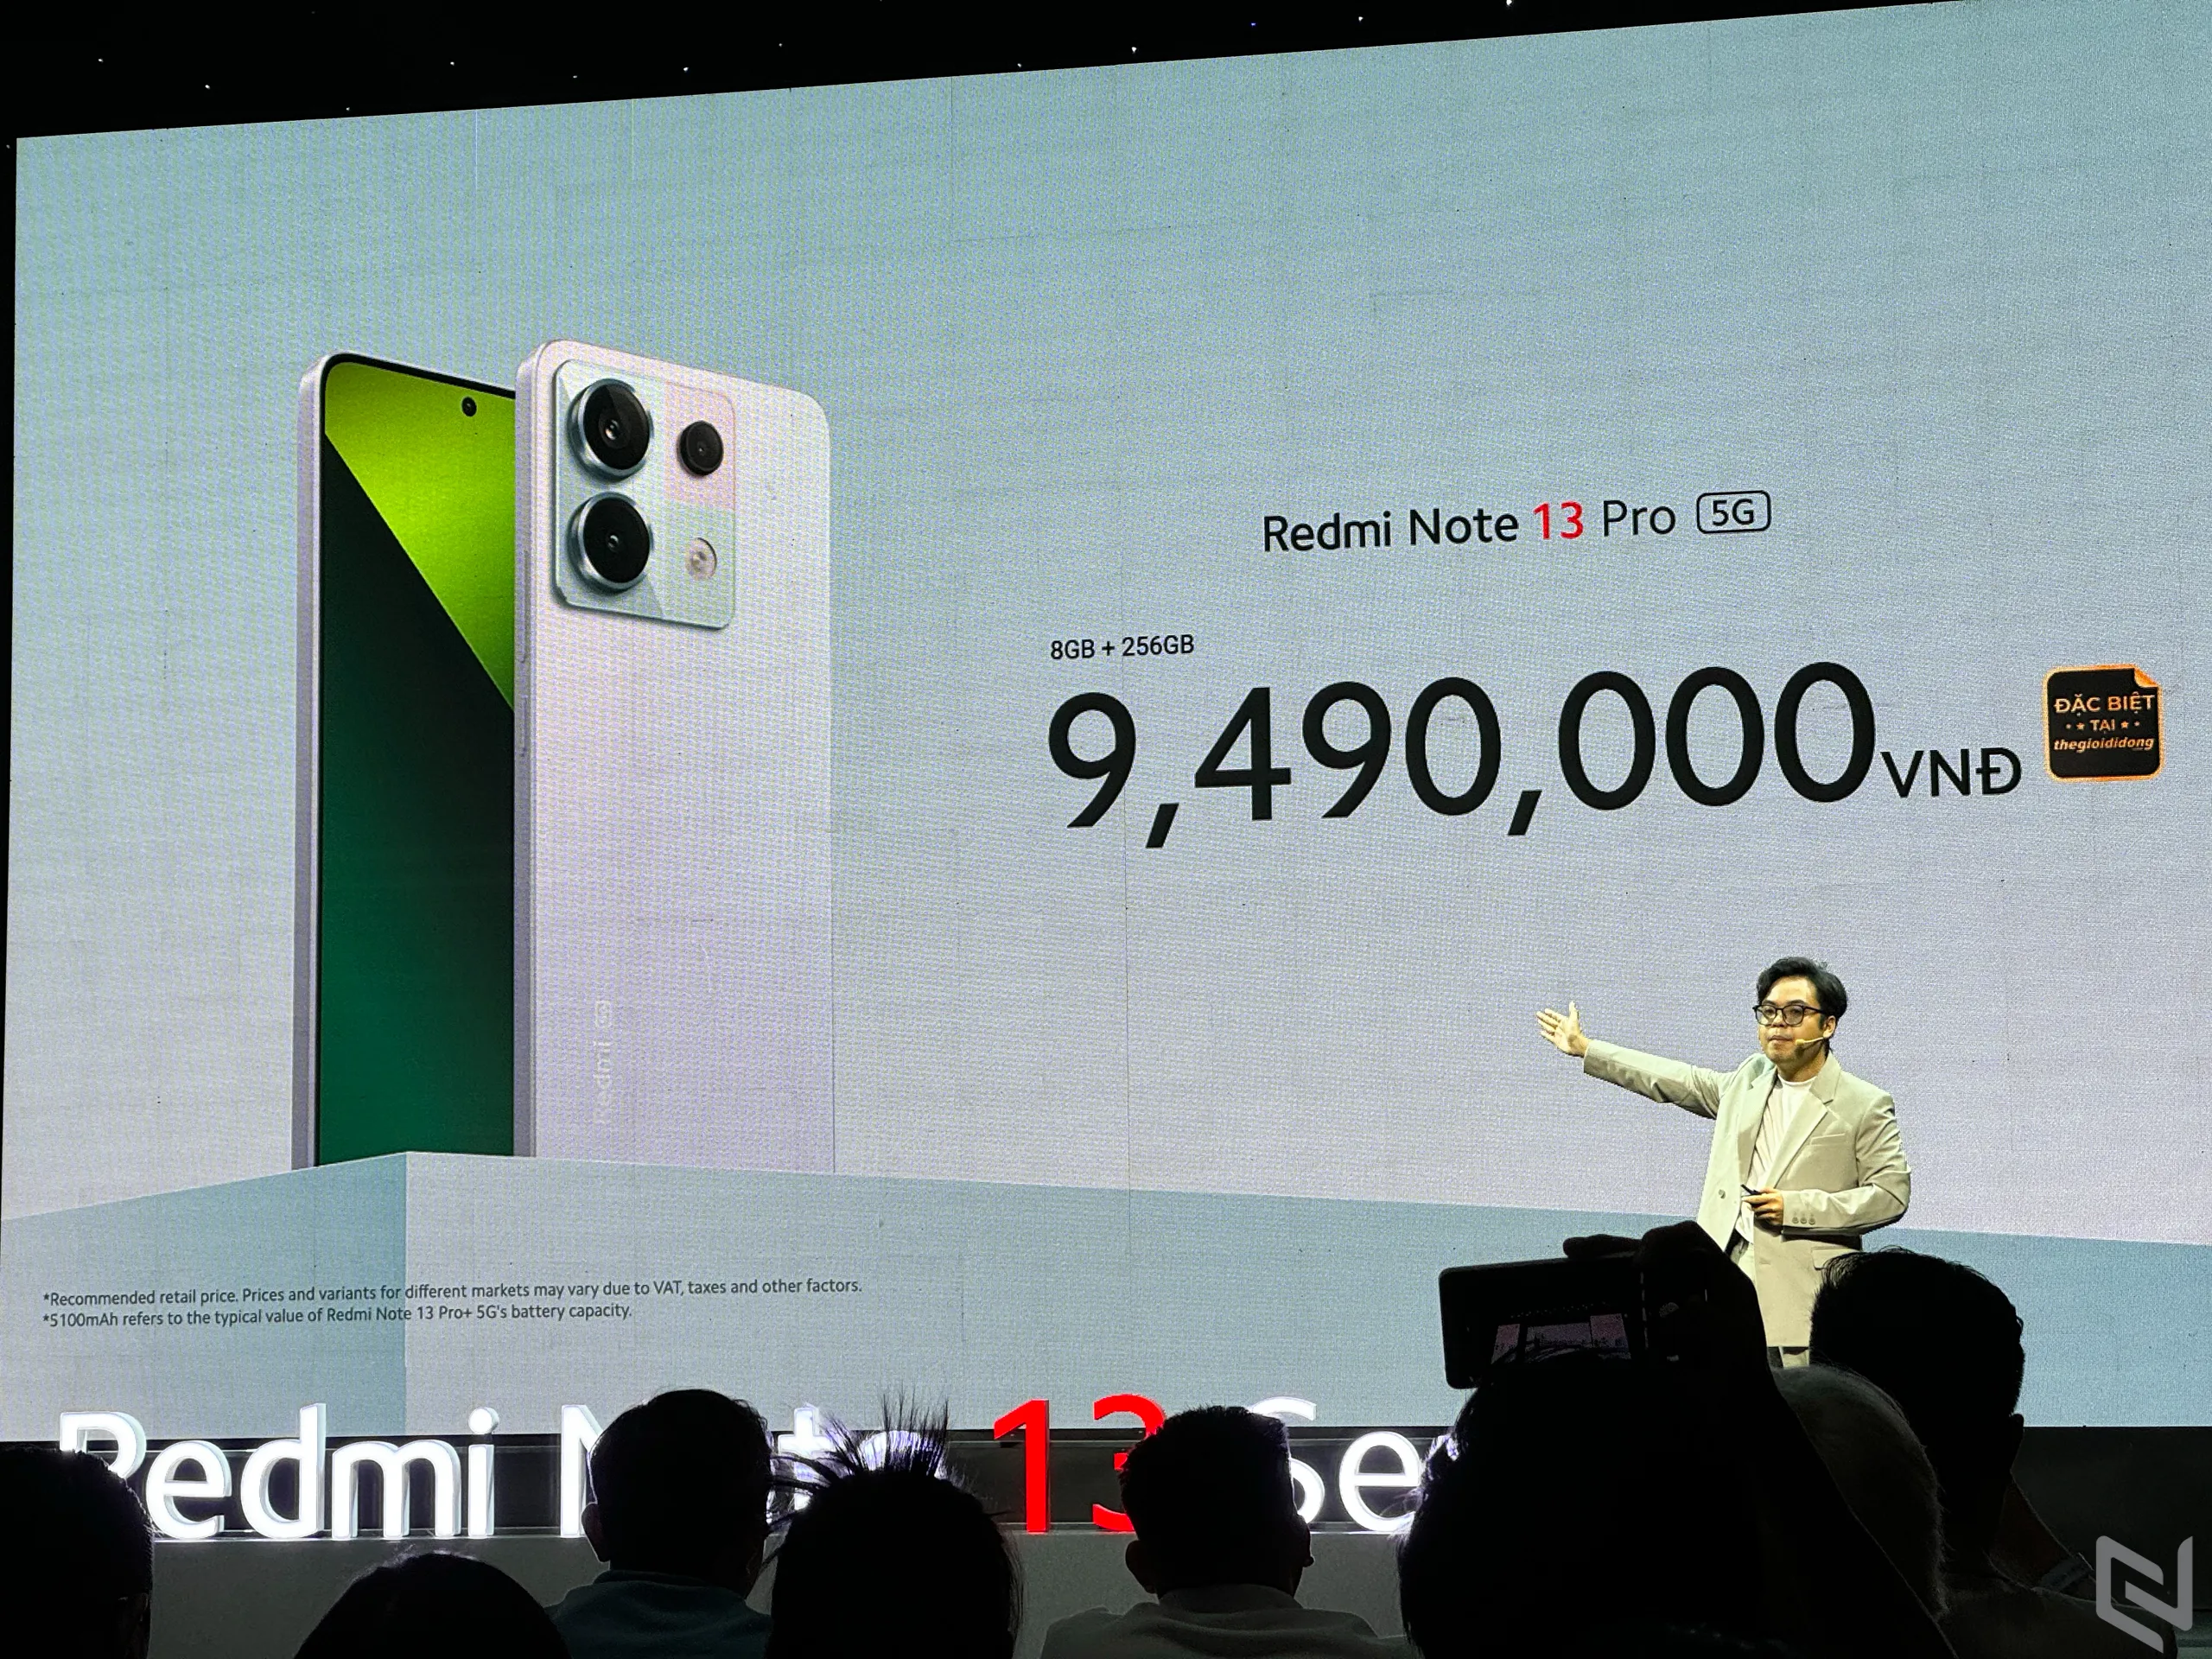 Redmi Note 13 Series chính thức ra mắt tại Việt Nam với giá từ 4.89 triệu đồng